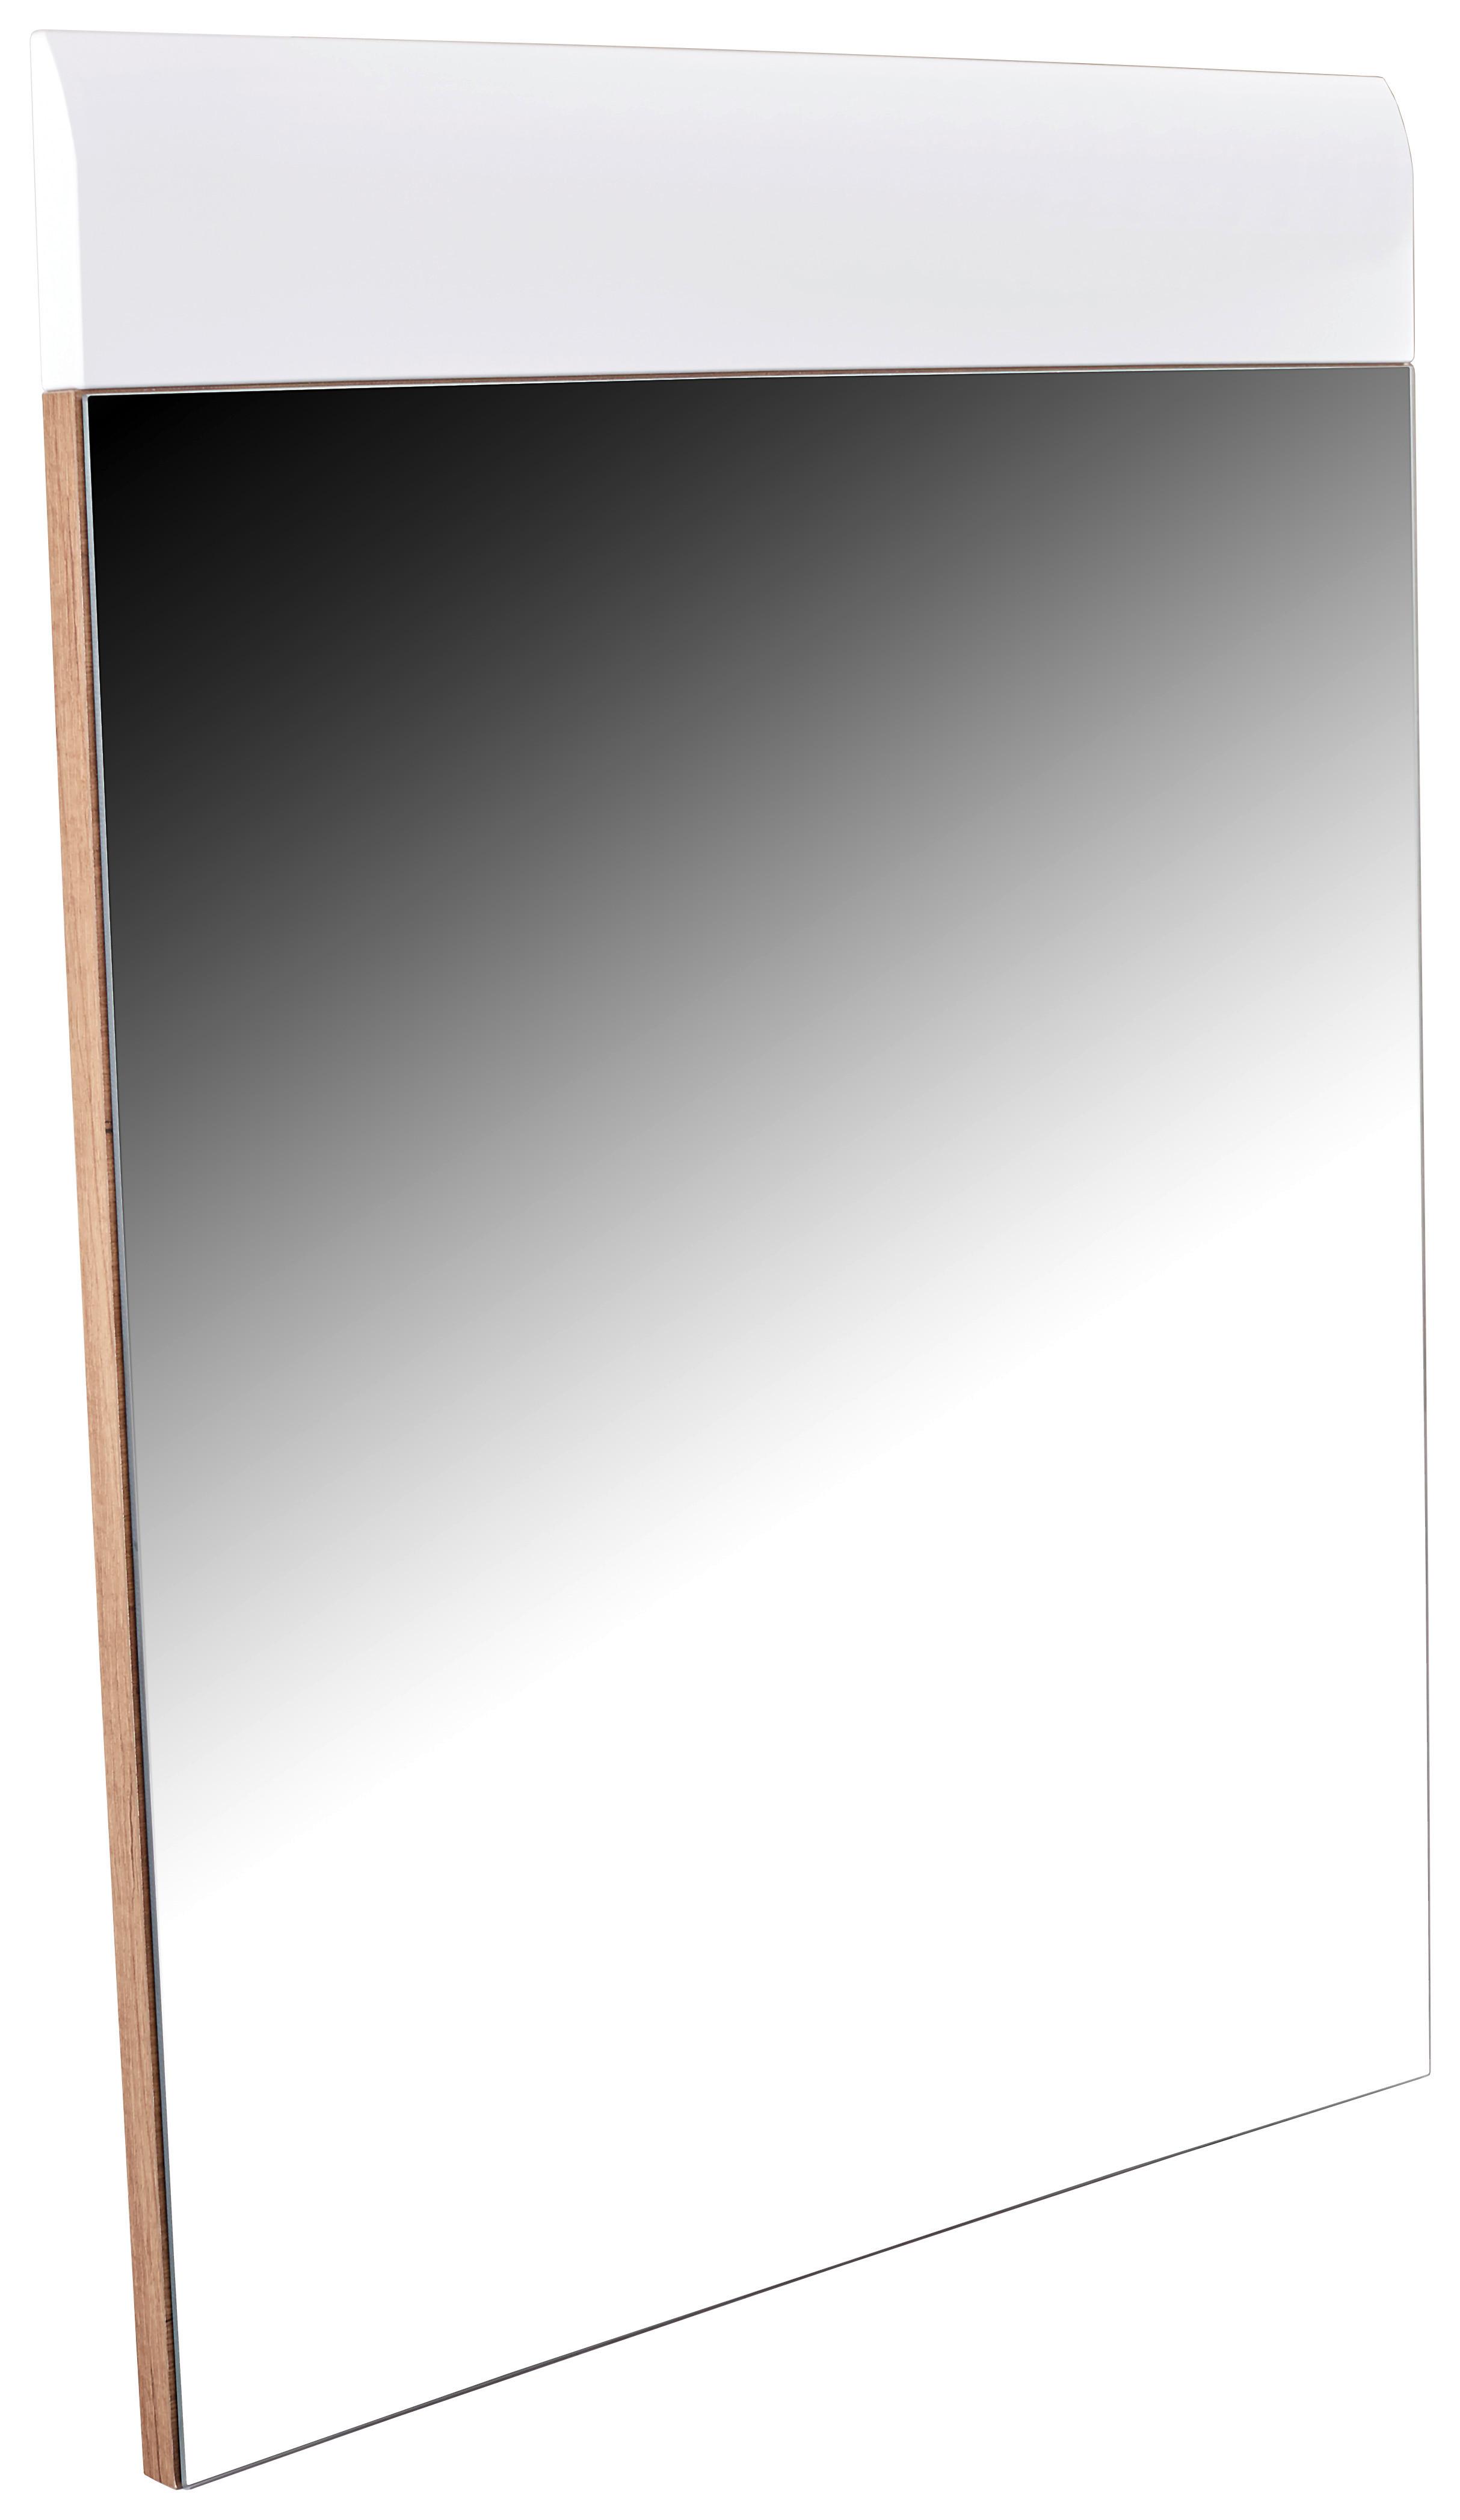 Ogledalo Avensis - bela/hrast, Moderno, leseni material (85/87/2cm) - Modern Living